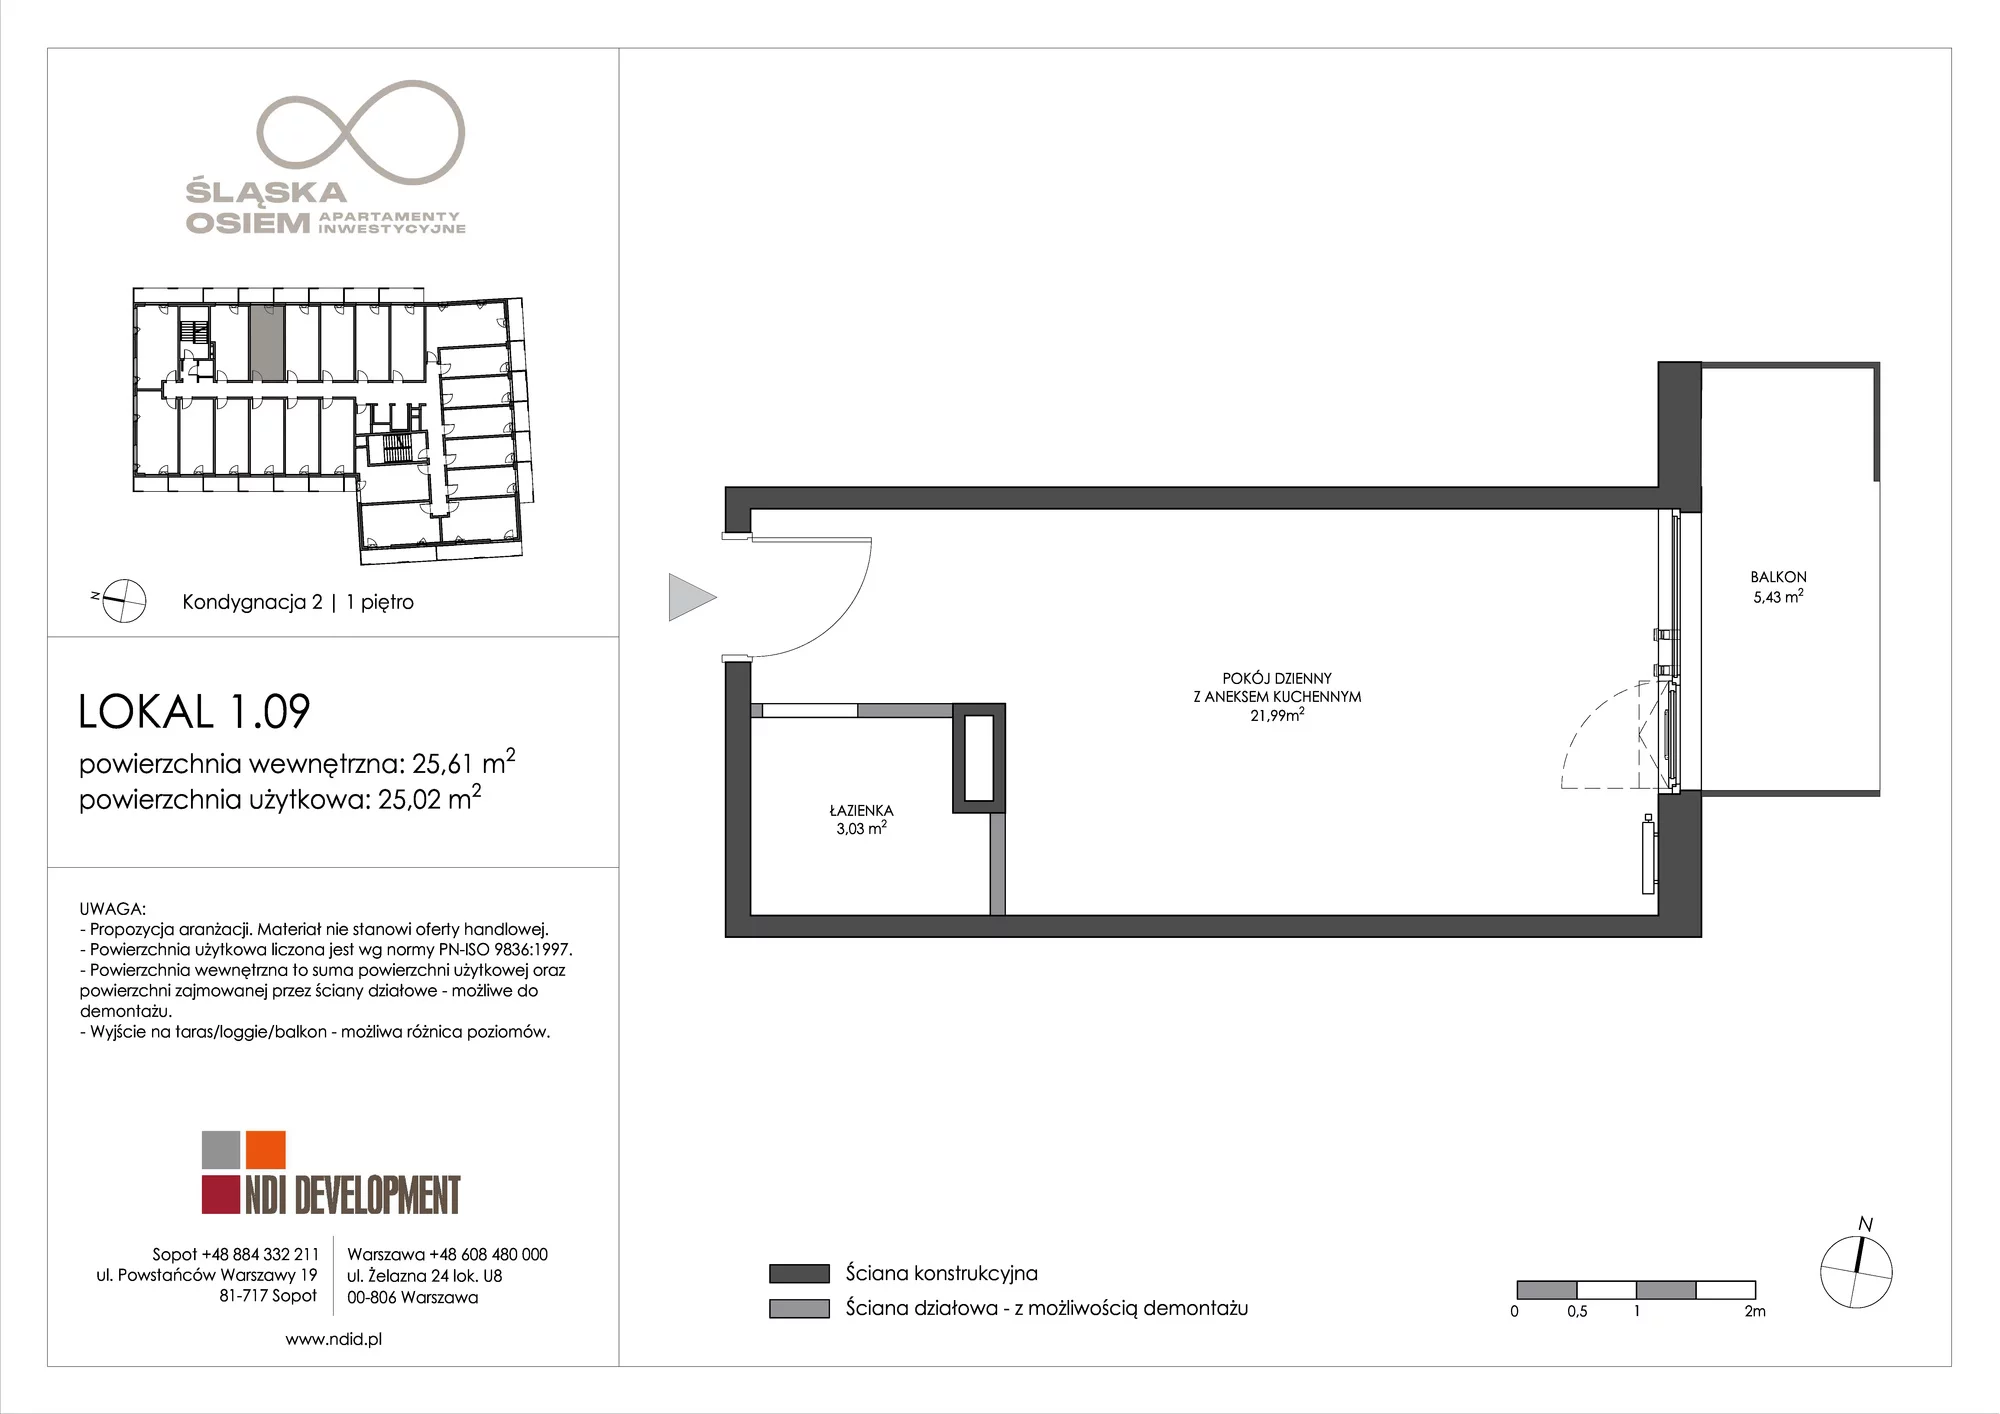 Apartament inwestycyjny 25,61 m², piętro 1, oferta nr 1.09, Śląska Osiem, Gdańsk, Przymorze, ul. Śląska 8